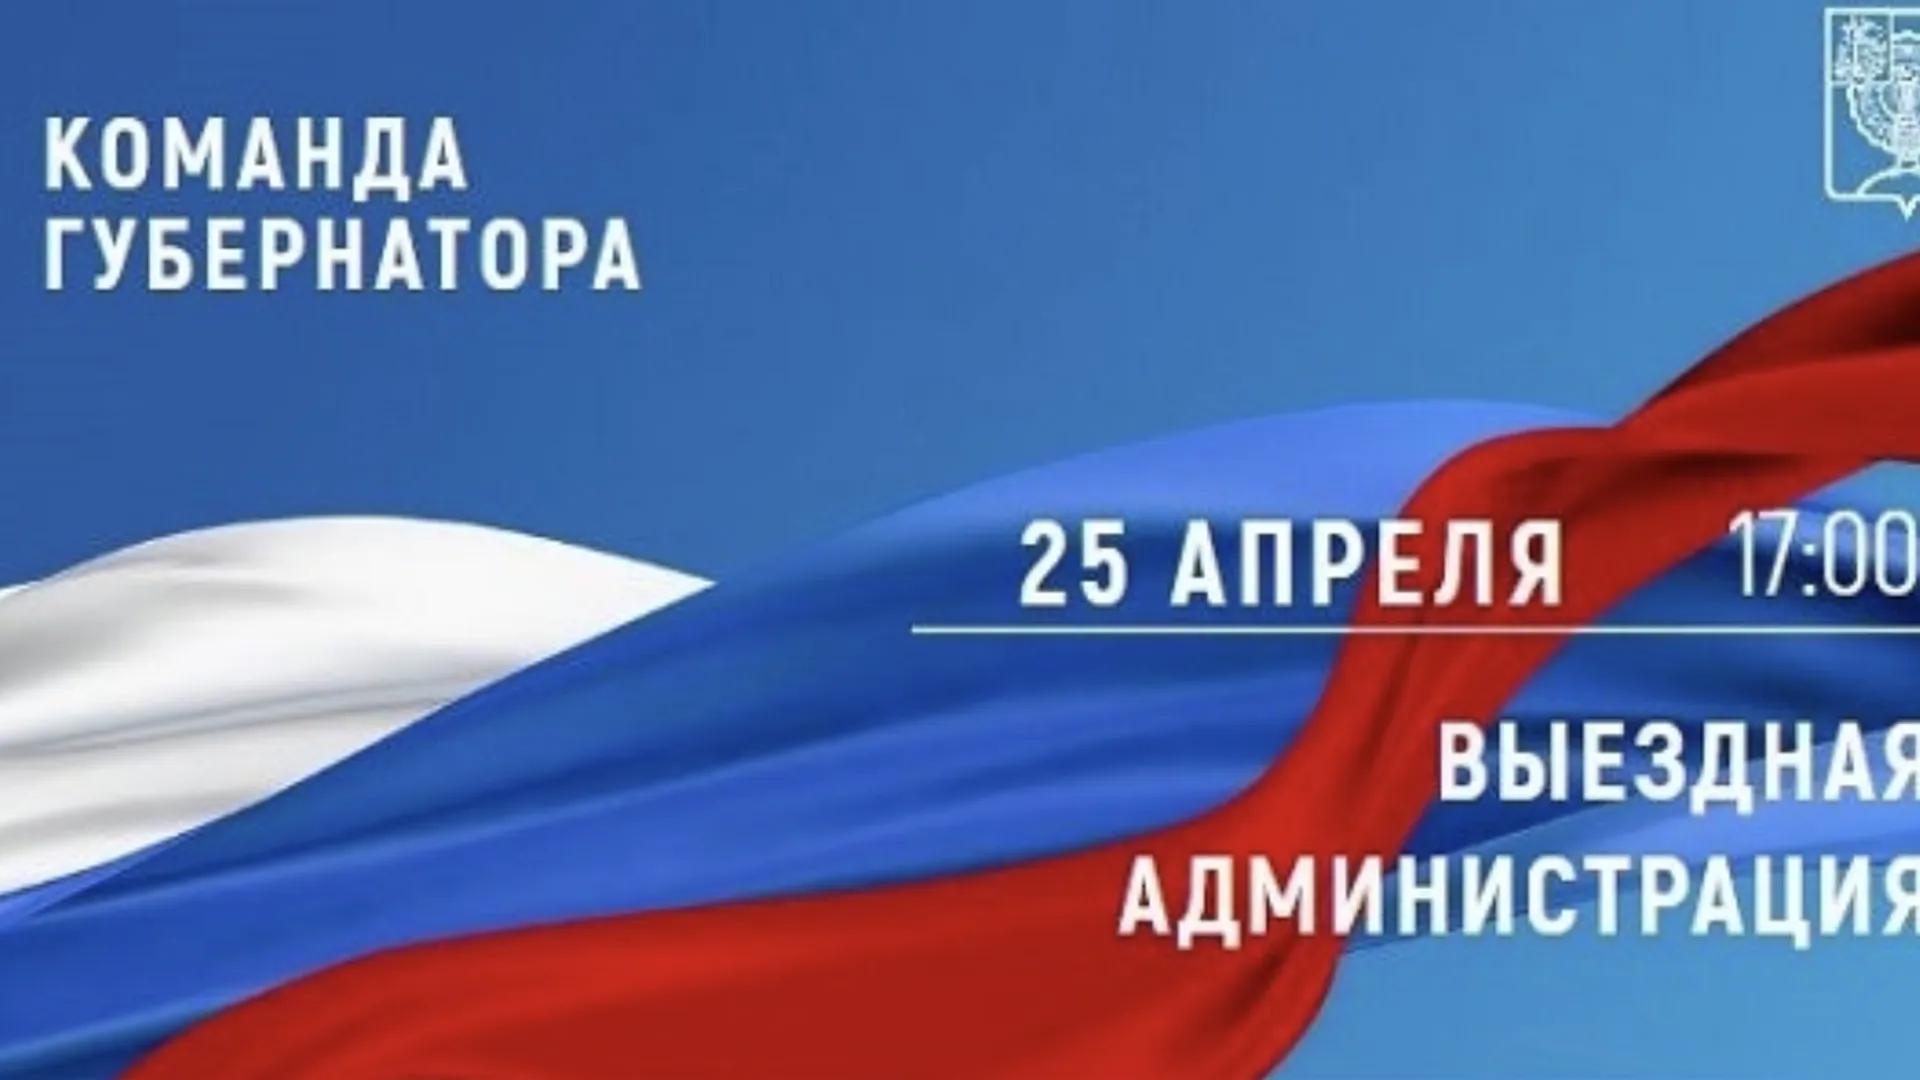 В Серпухове 25 апреля состоится прием жителей в рамках выездной администрации